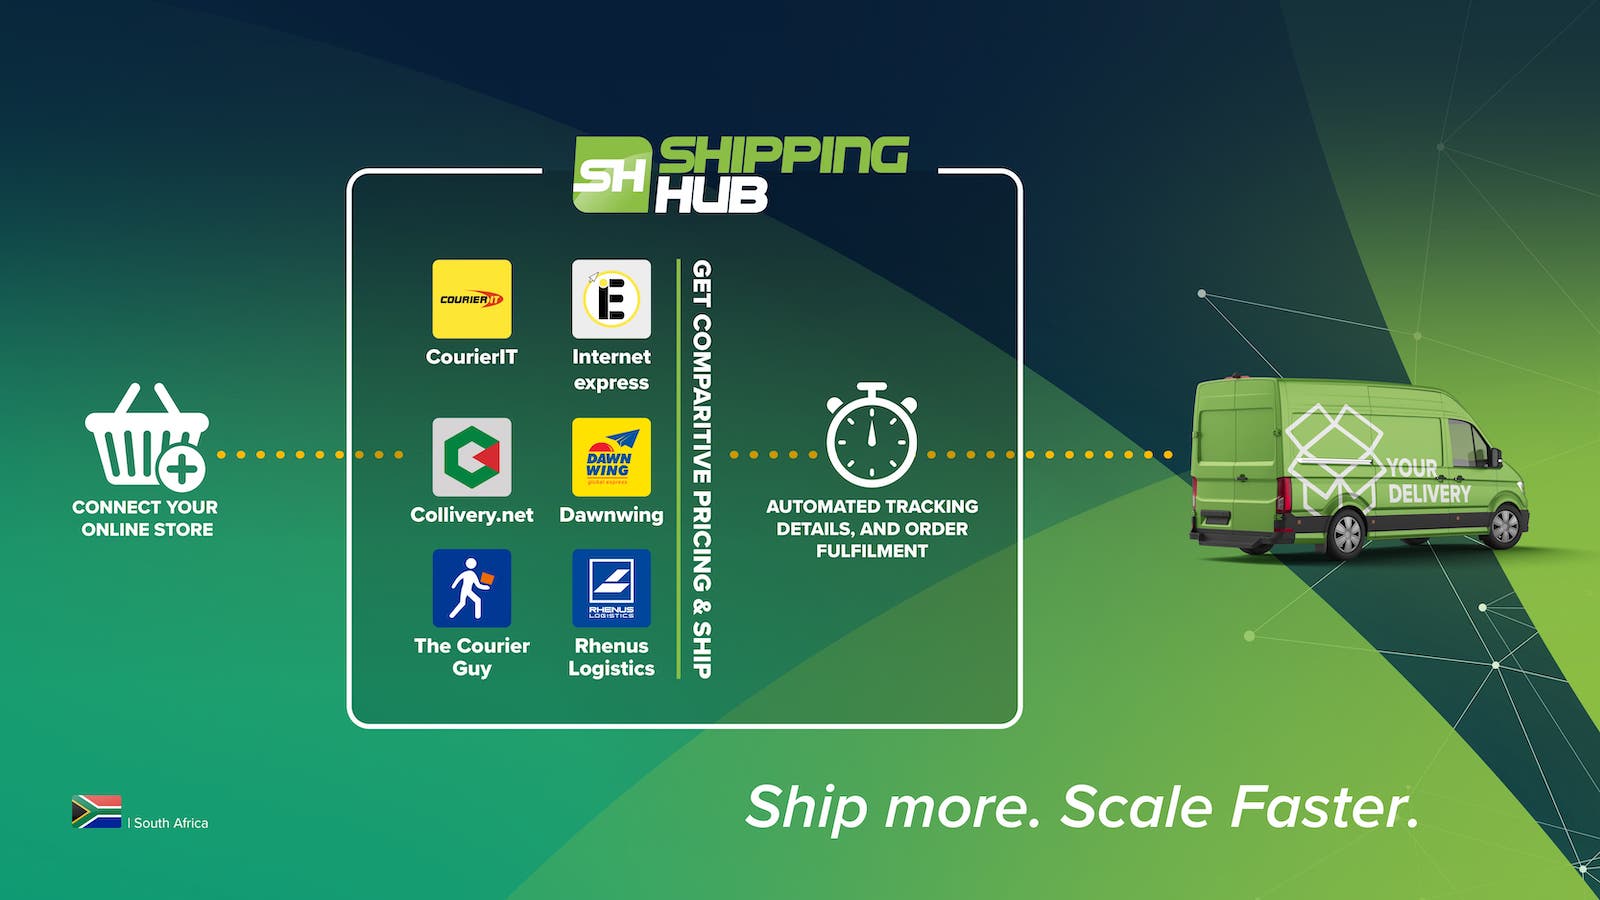 Tela de configurações do Shipping Hub